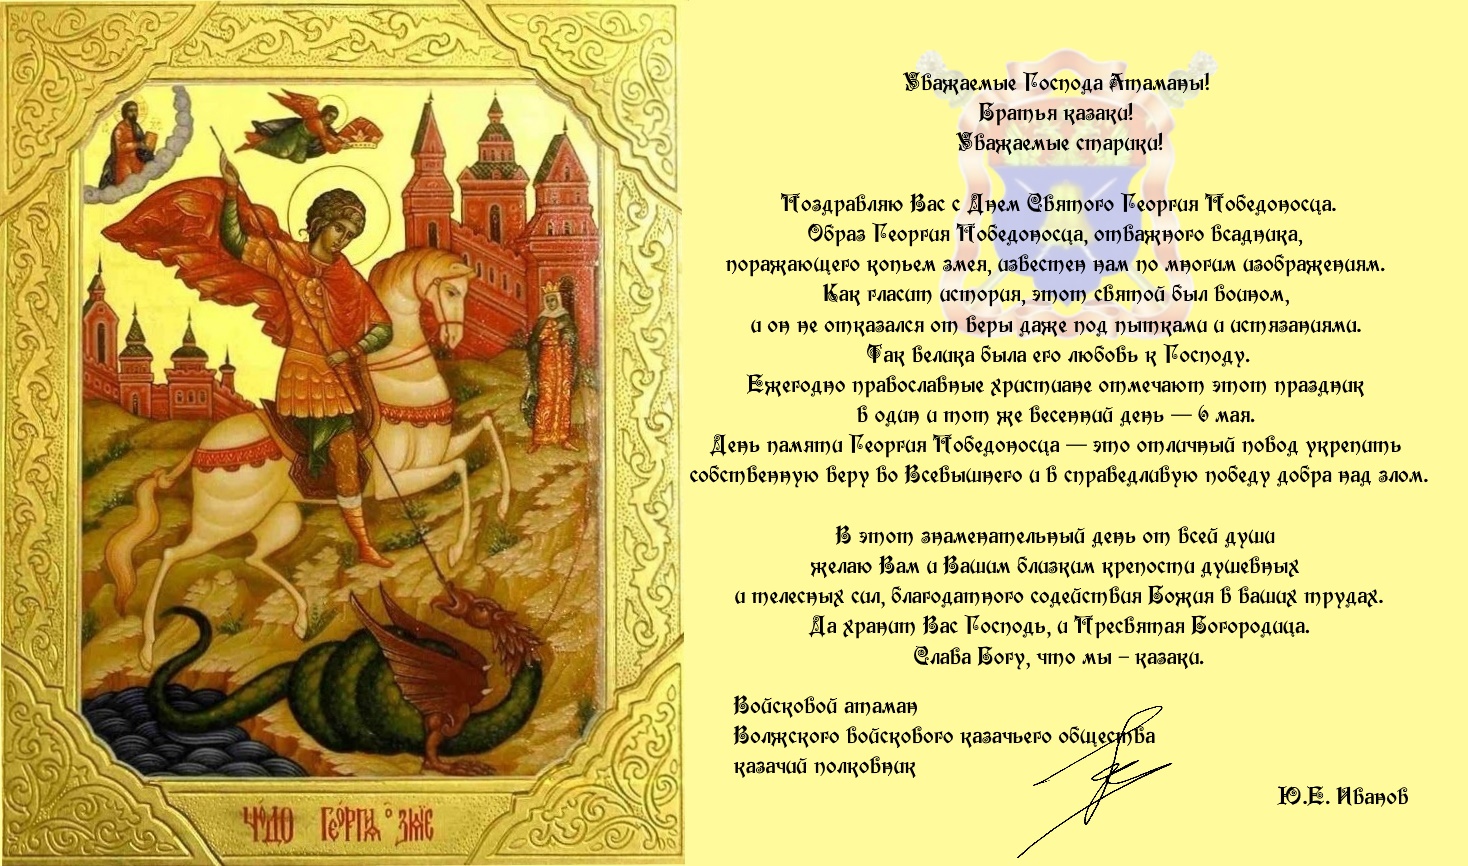 Поздравление с днем войска от Ю.Е. Иванова